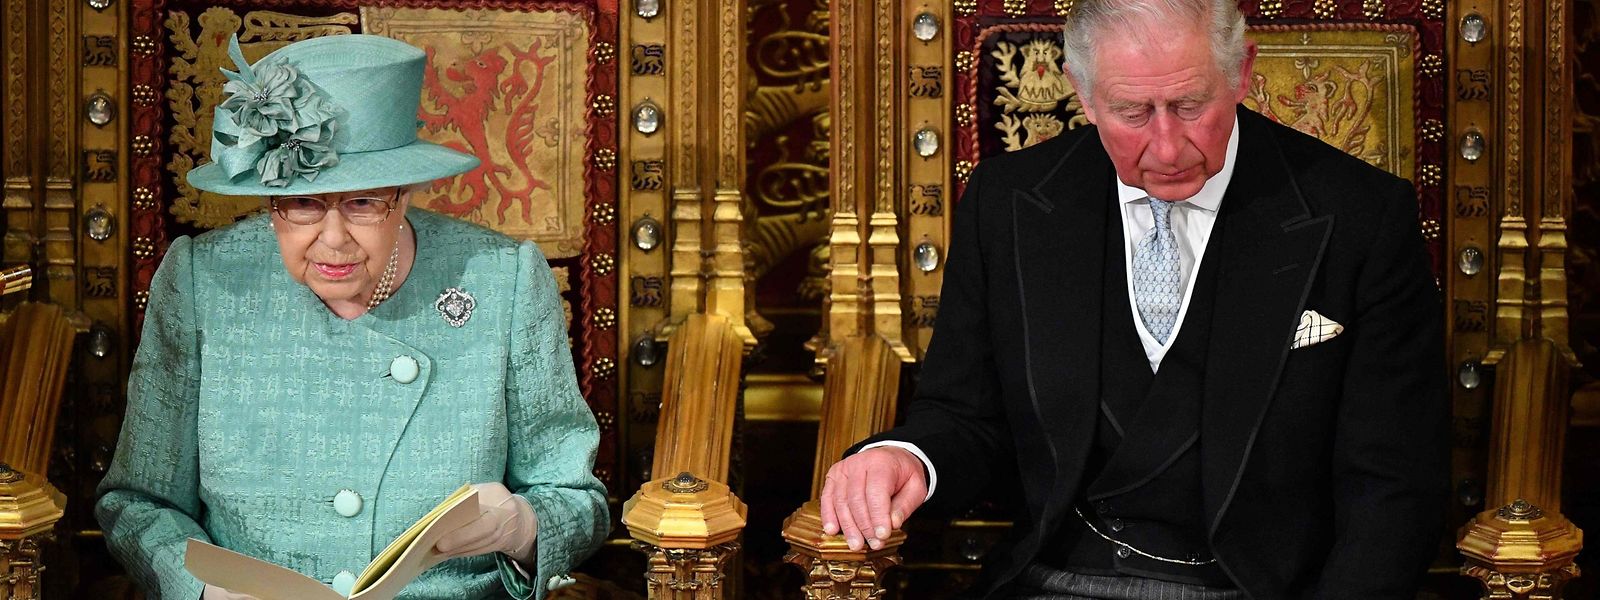 Le prince Charles remplacera sa mère, la reine Elizabeth II, lors de la cérémonie d'ouverture mardi du Parlement britannique, a déclaré le palais de Buckingham.